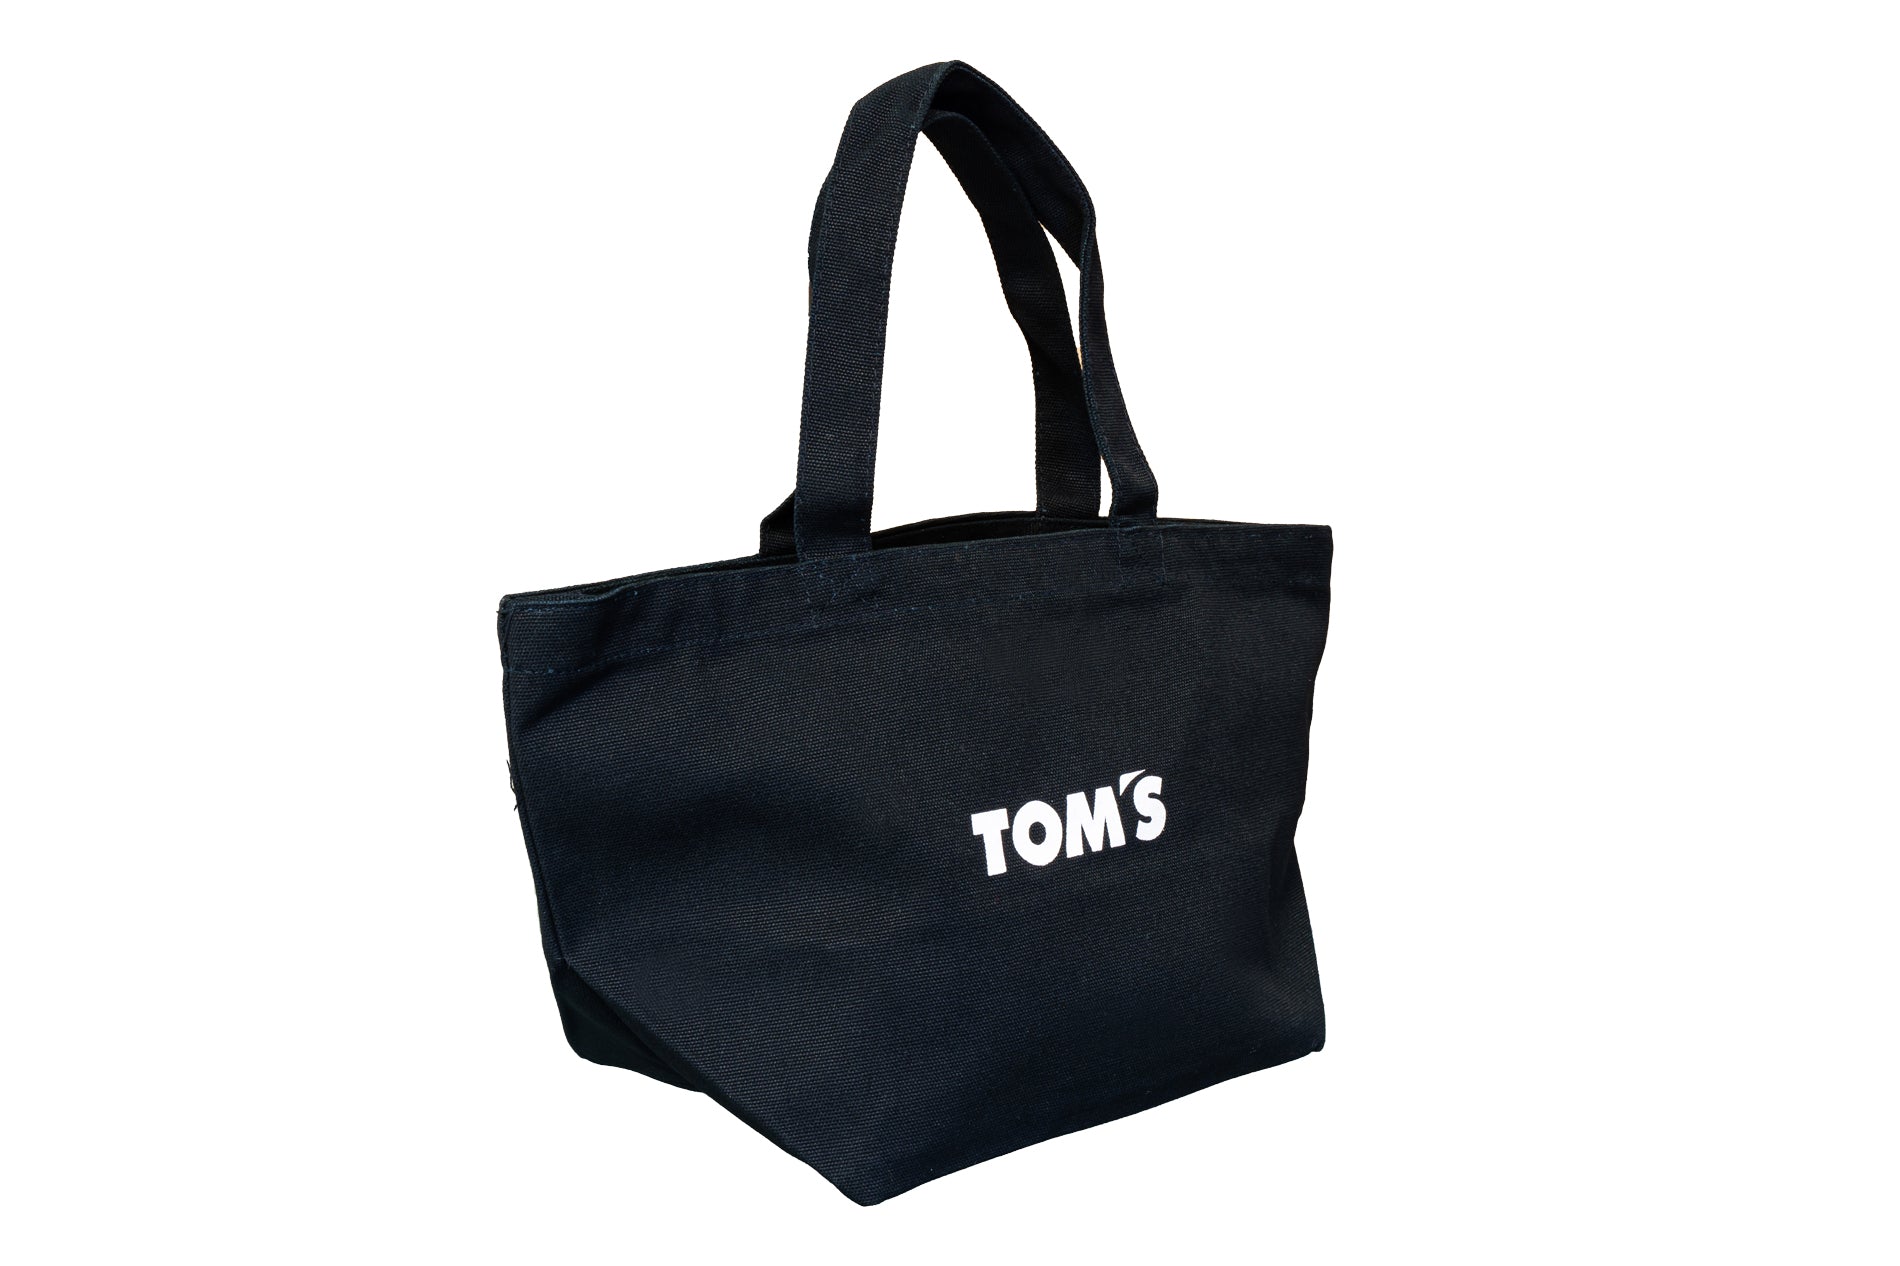 TOM'S Racing - Small Tote Bag